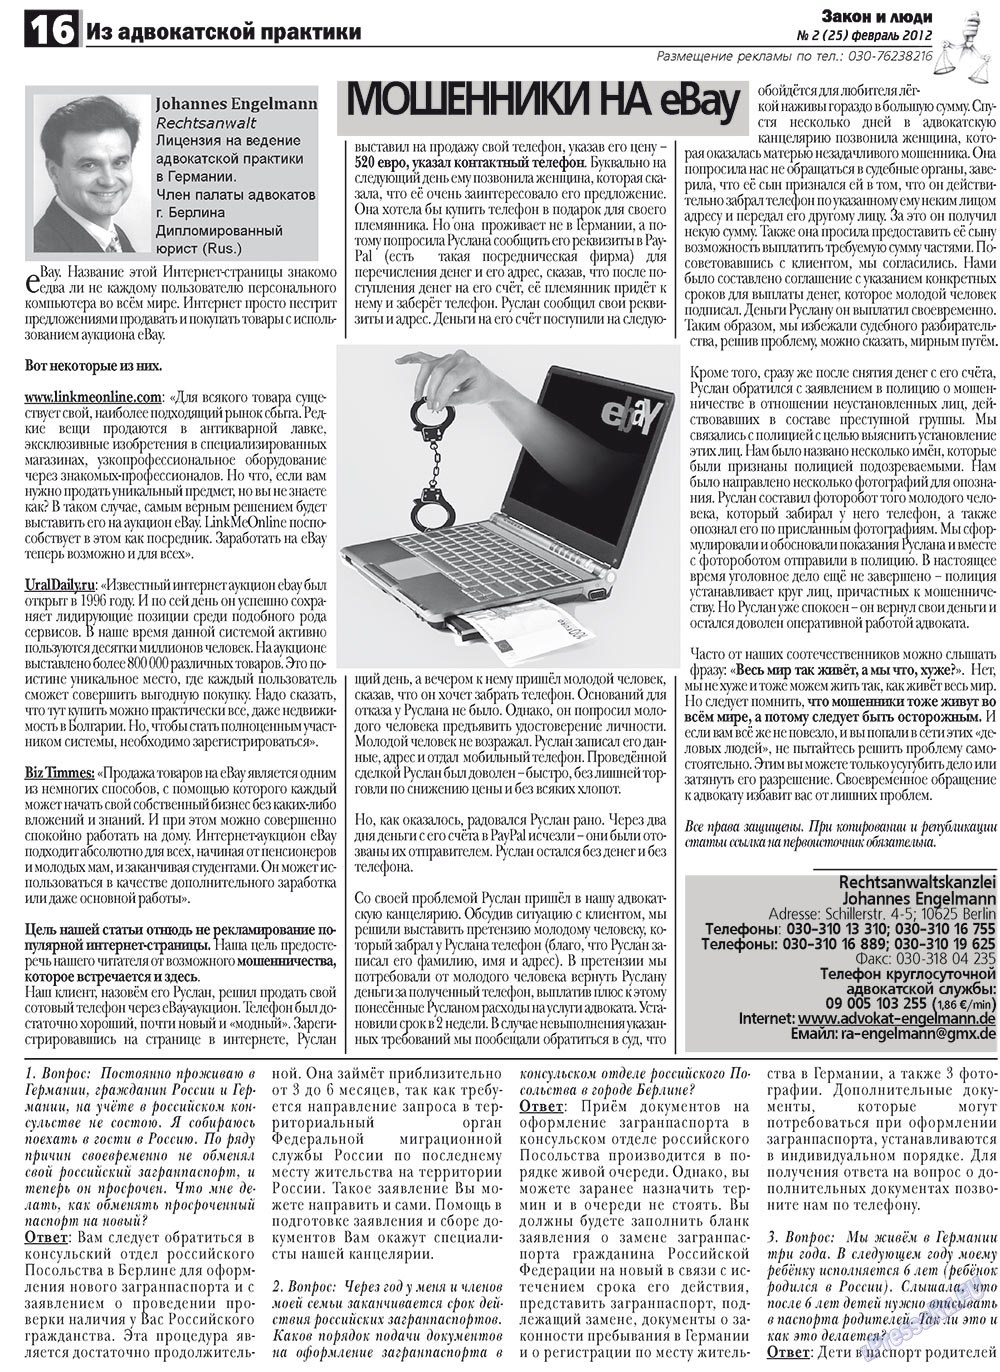 Закон и люди, газета. 2012 №2 стр.16